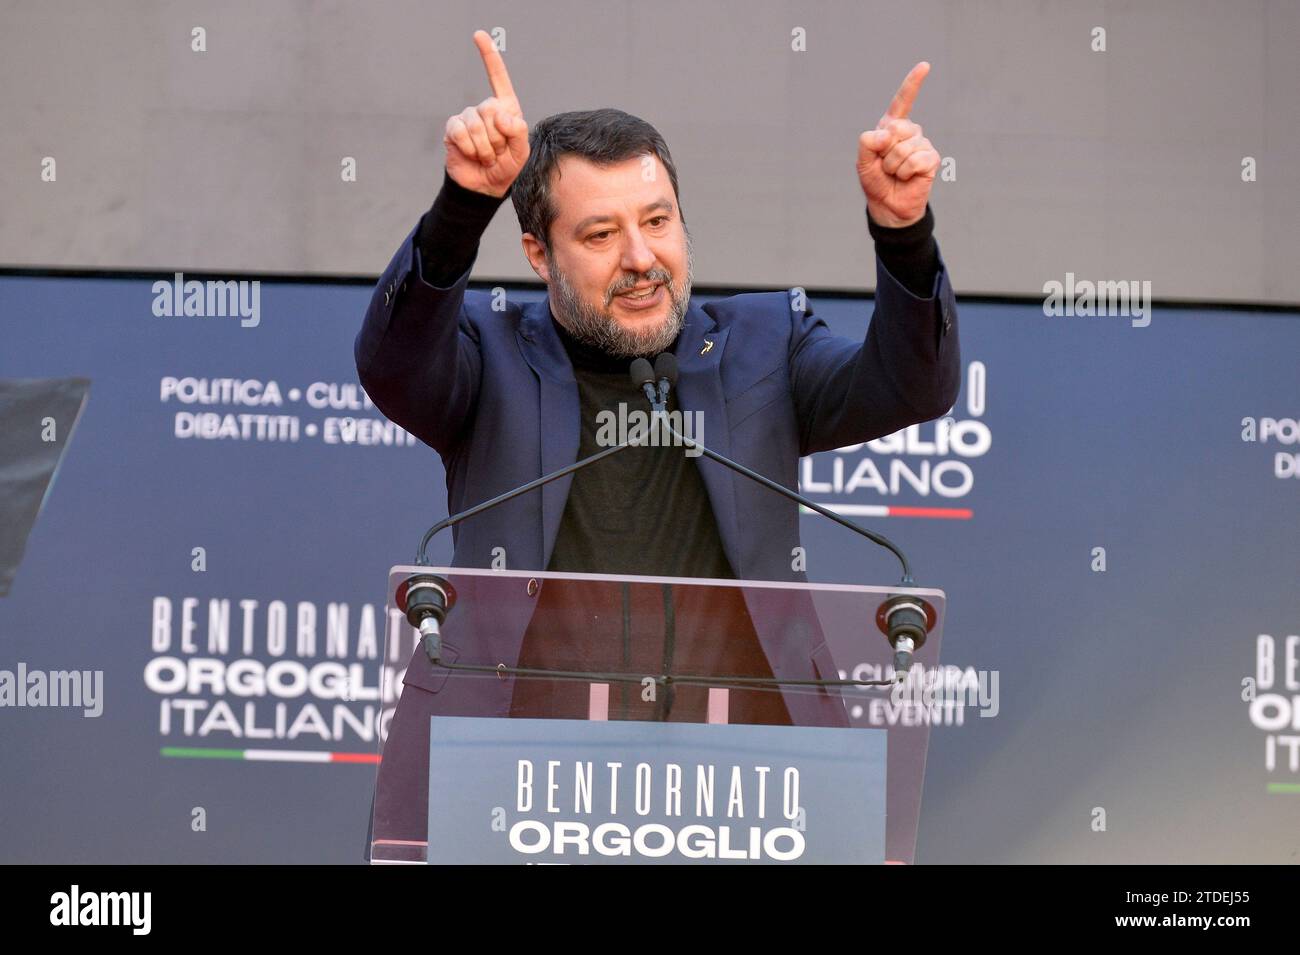 Italia, Roma, 17 dicembre 2023: Matteo Salvini, Ministro dei trasporti e delle infrastrutture, partecipa all'incontro "Atreju 2023". Foto © Stefano Carofei/sintesi/Alamy Live News Foto Stock